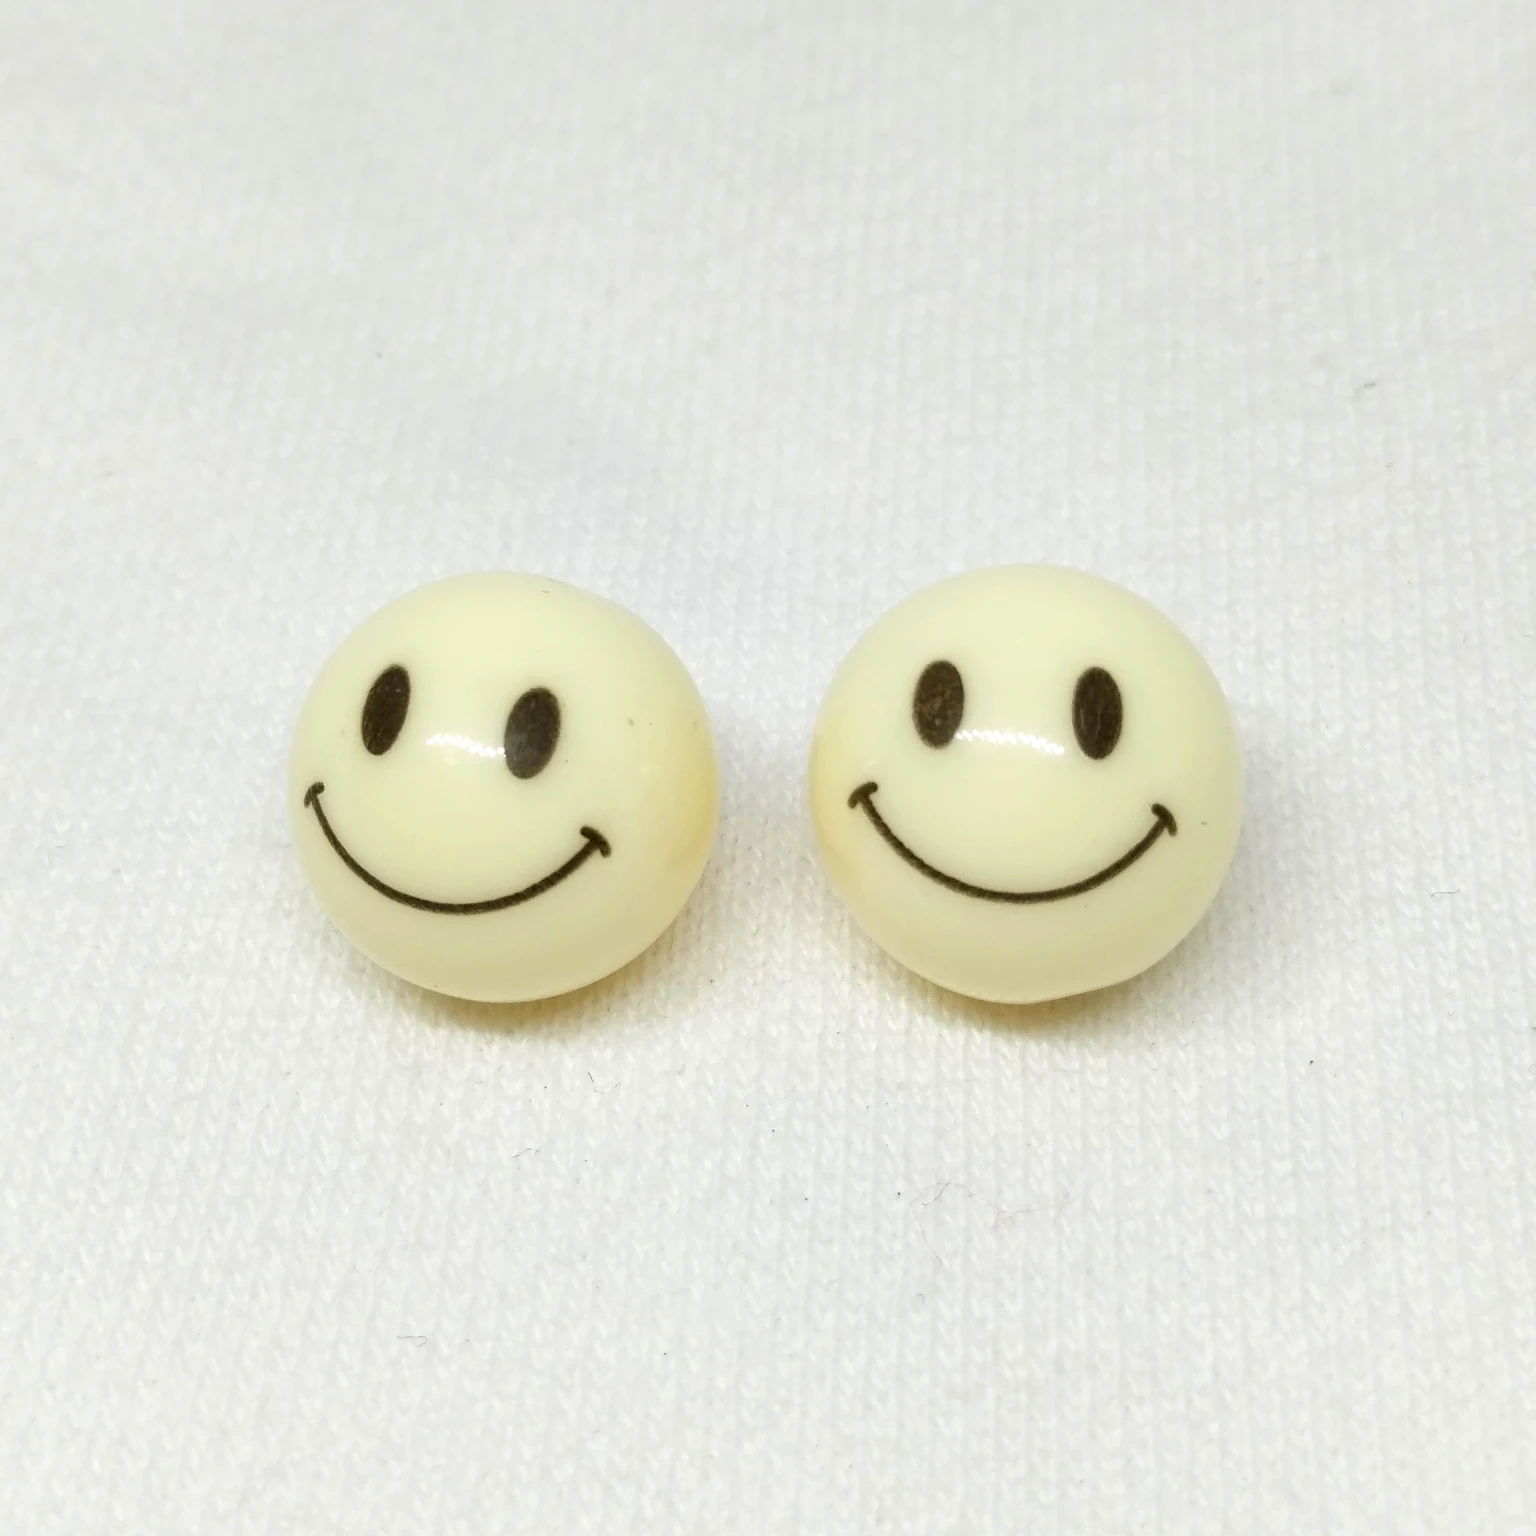 10 шт. 14 мм smiley face узор круглые осветляющие бусины из смолы, браслет серьги аксессуары для изготовления украшений, популярный